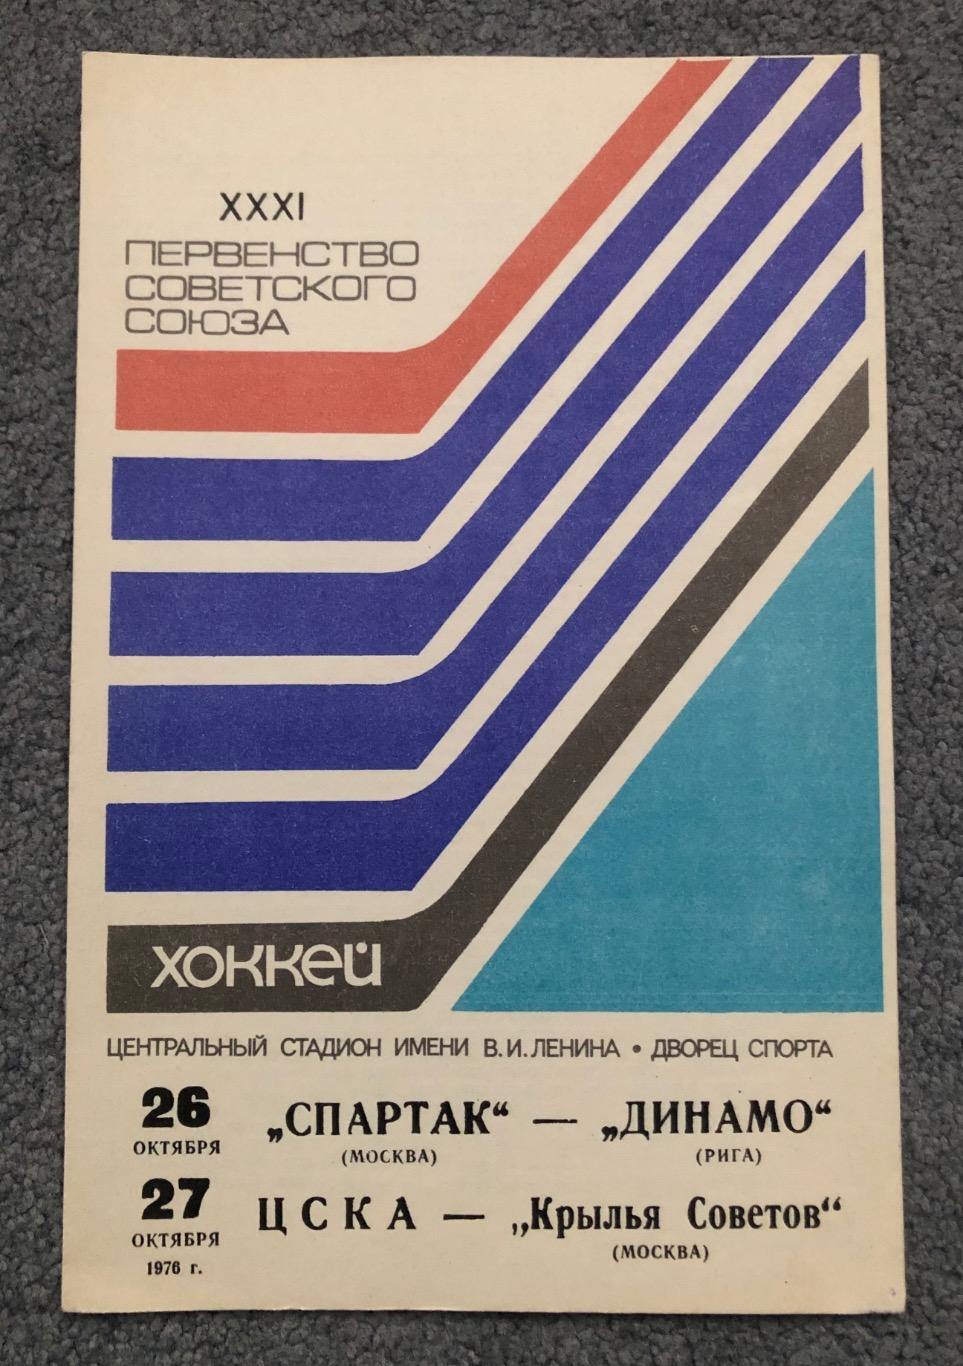 Спартак Москва - Динамо Рига, ЦСКА - Крылья Советов Москва, 26 и 27.10.1976